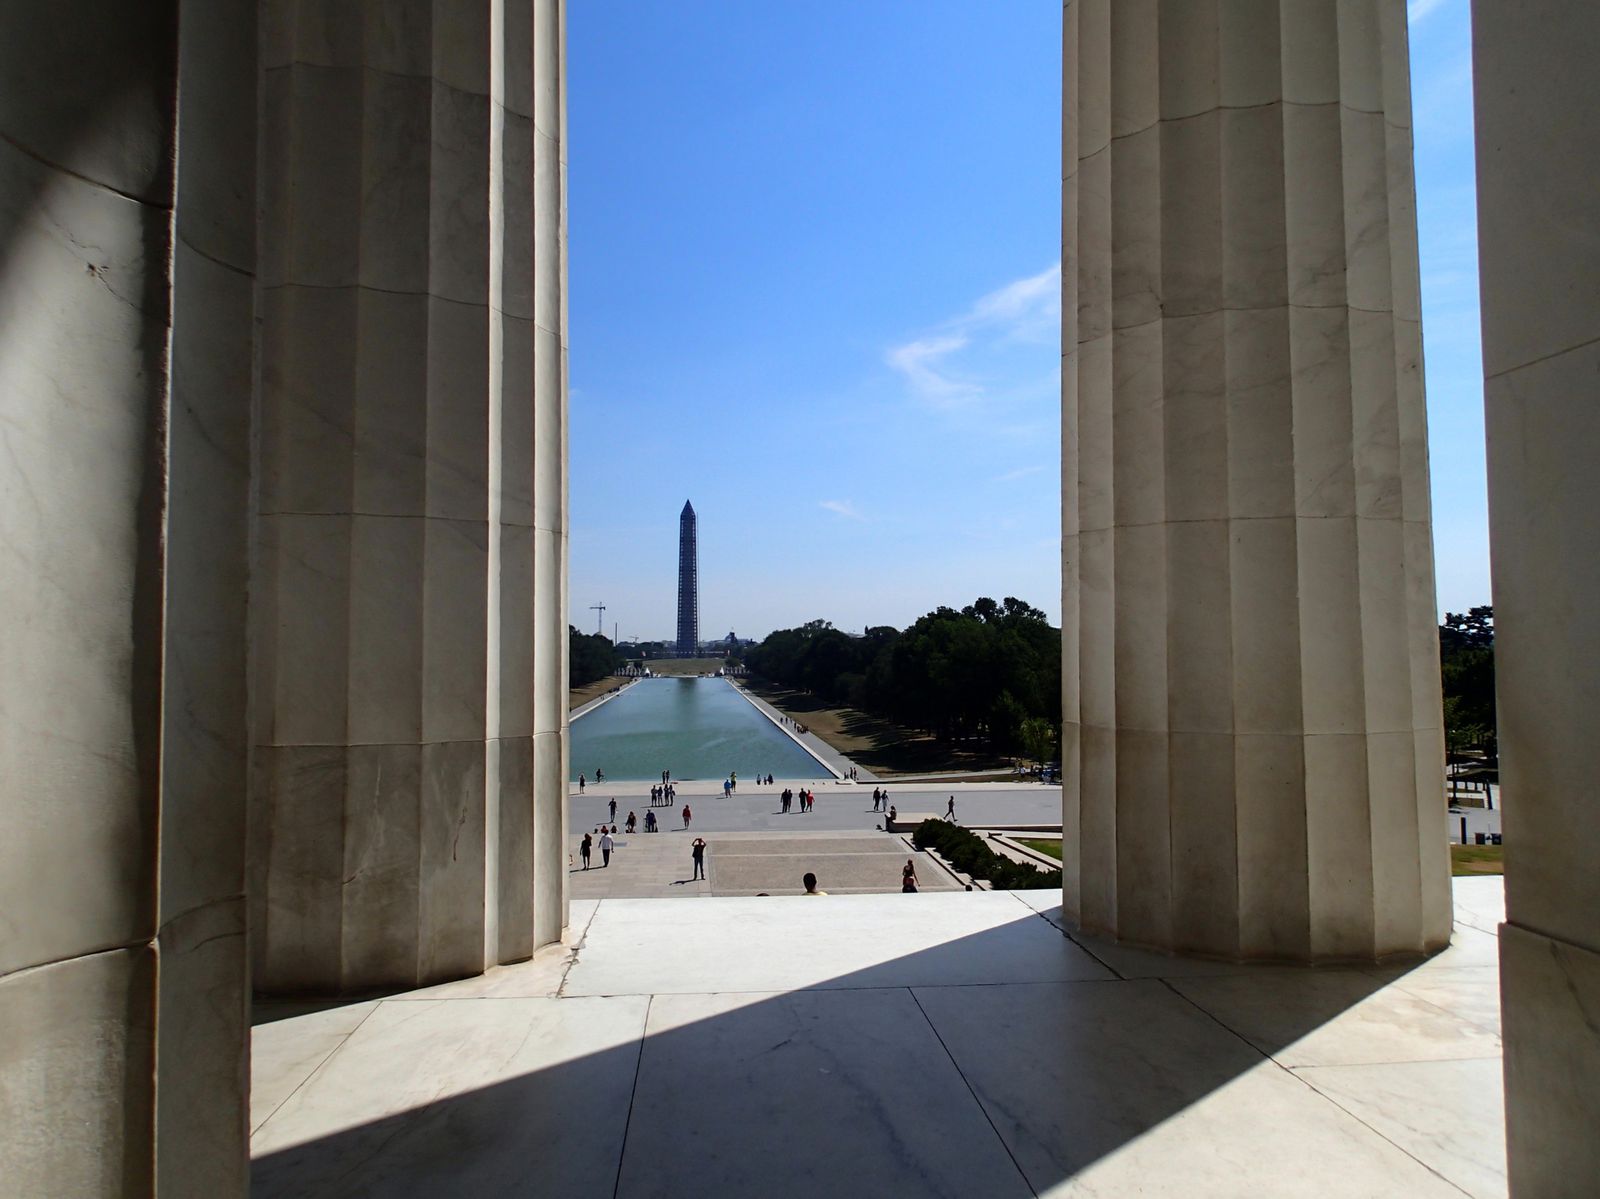 Depuis le Lincoln Memorial, vue sur le Mall avec le Reflecting Pool et au loin l'obélisque du Washington Monument